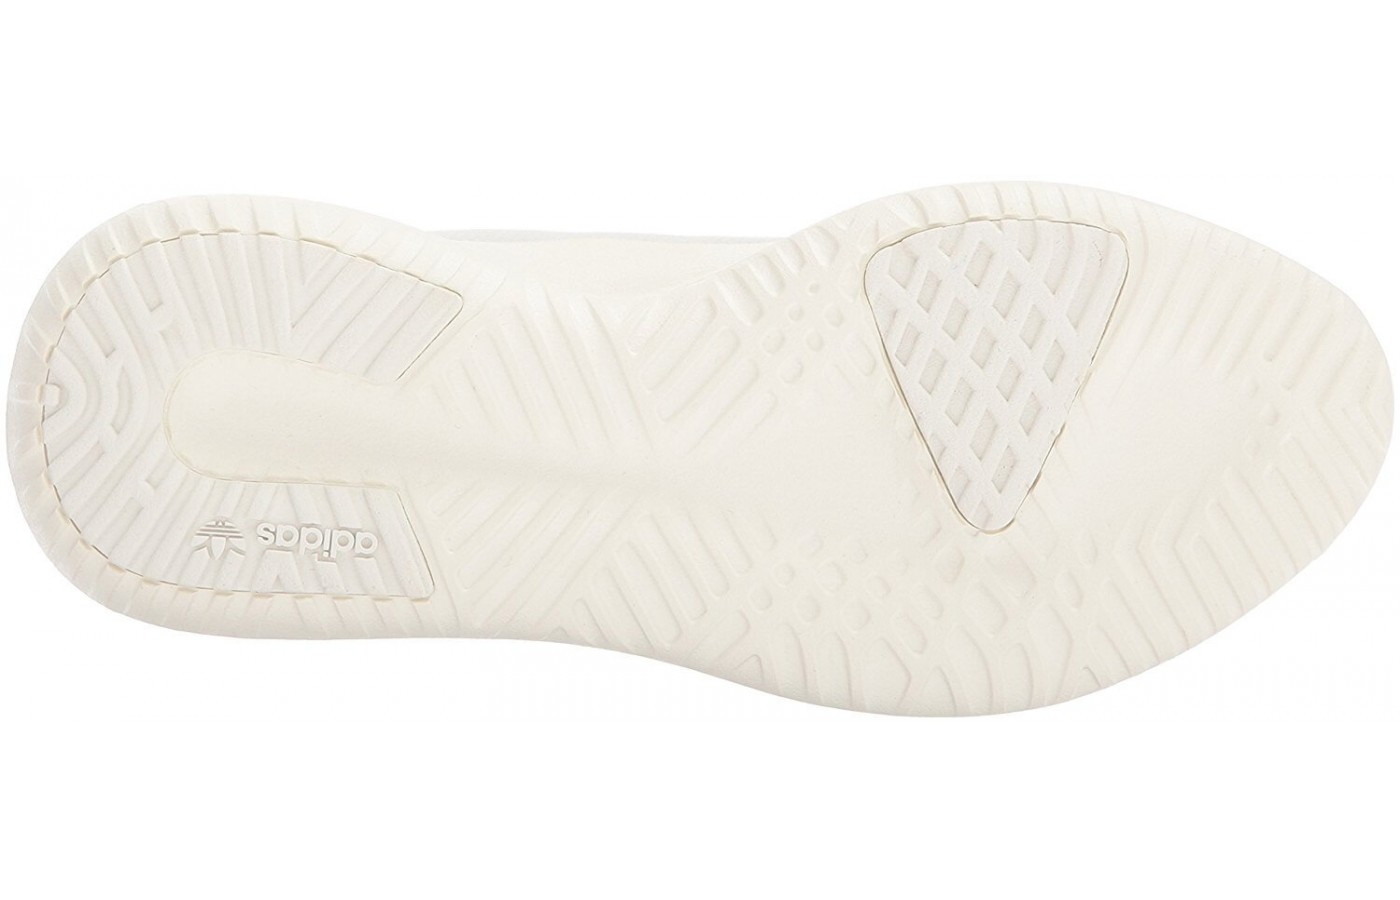 The Adidas Tubular Shadow features a Tubular rubber sole